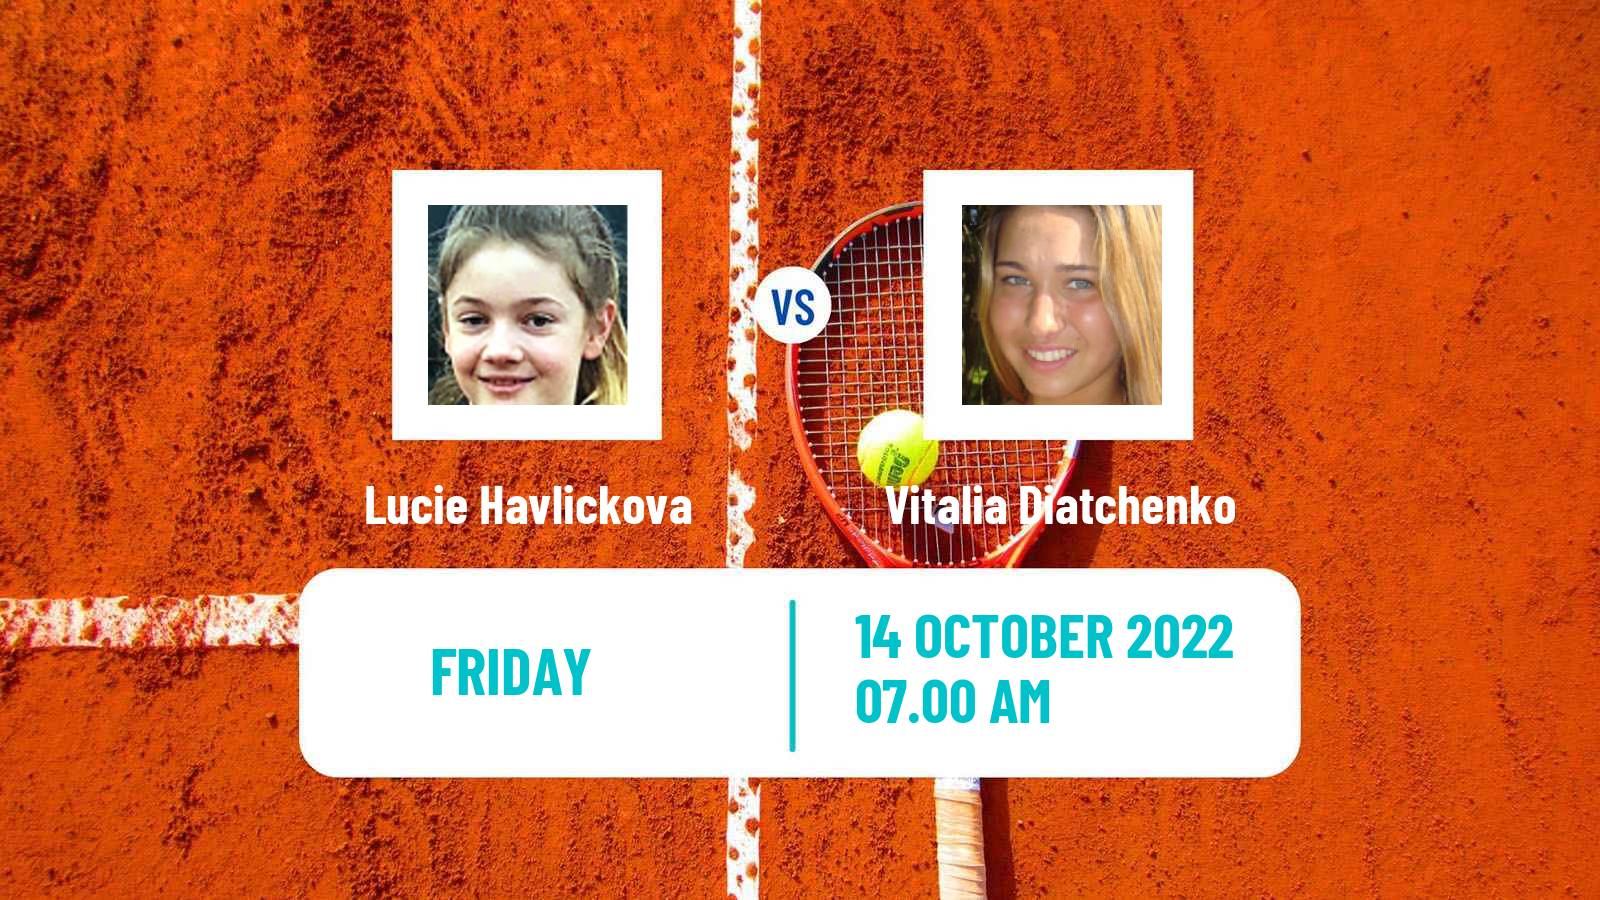 Tennis ITF Tournaments Lucie Havlickova - Vitalia Diatchenko